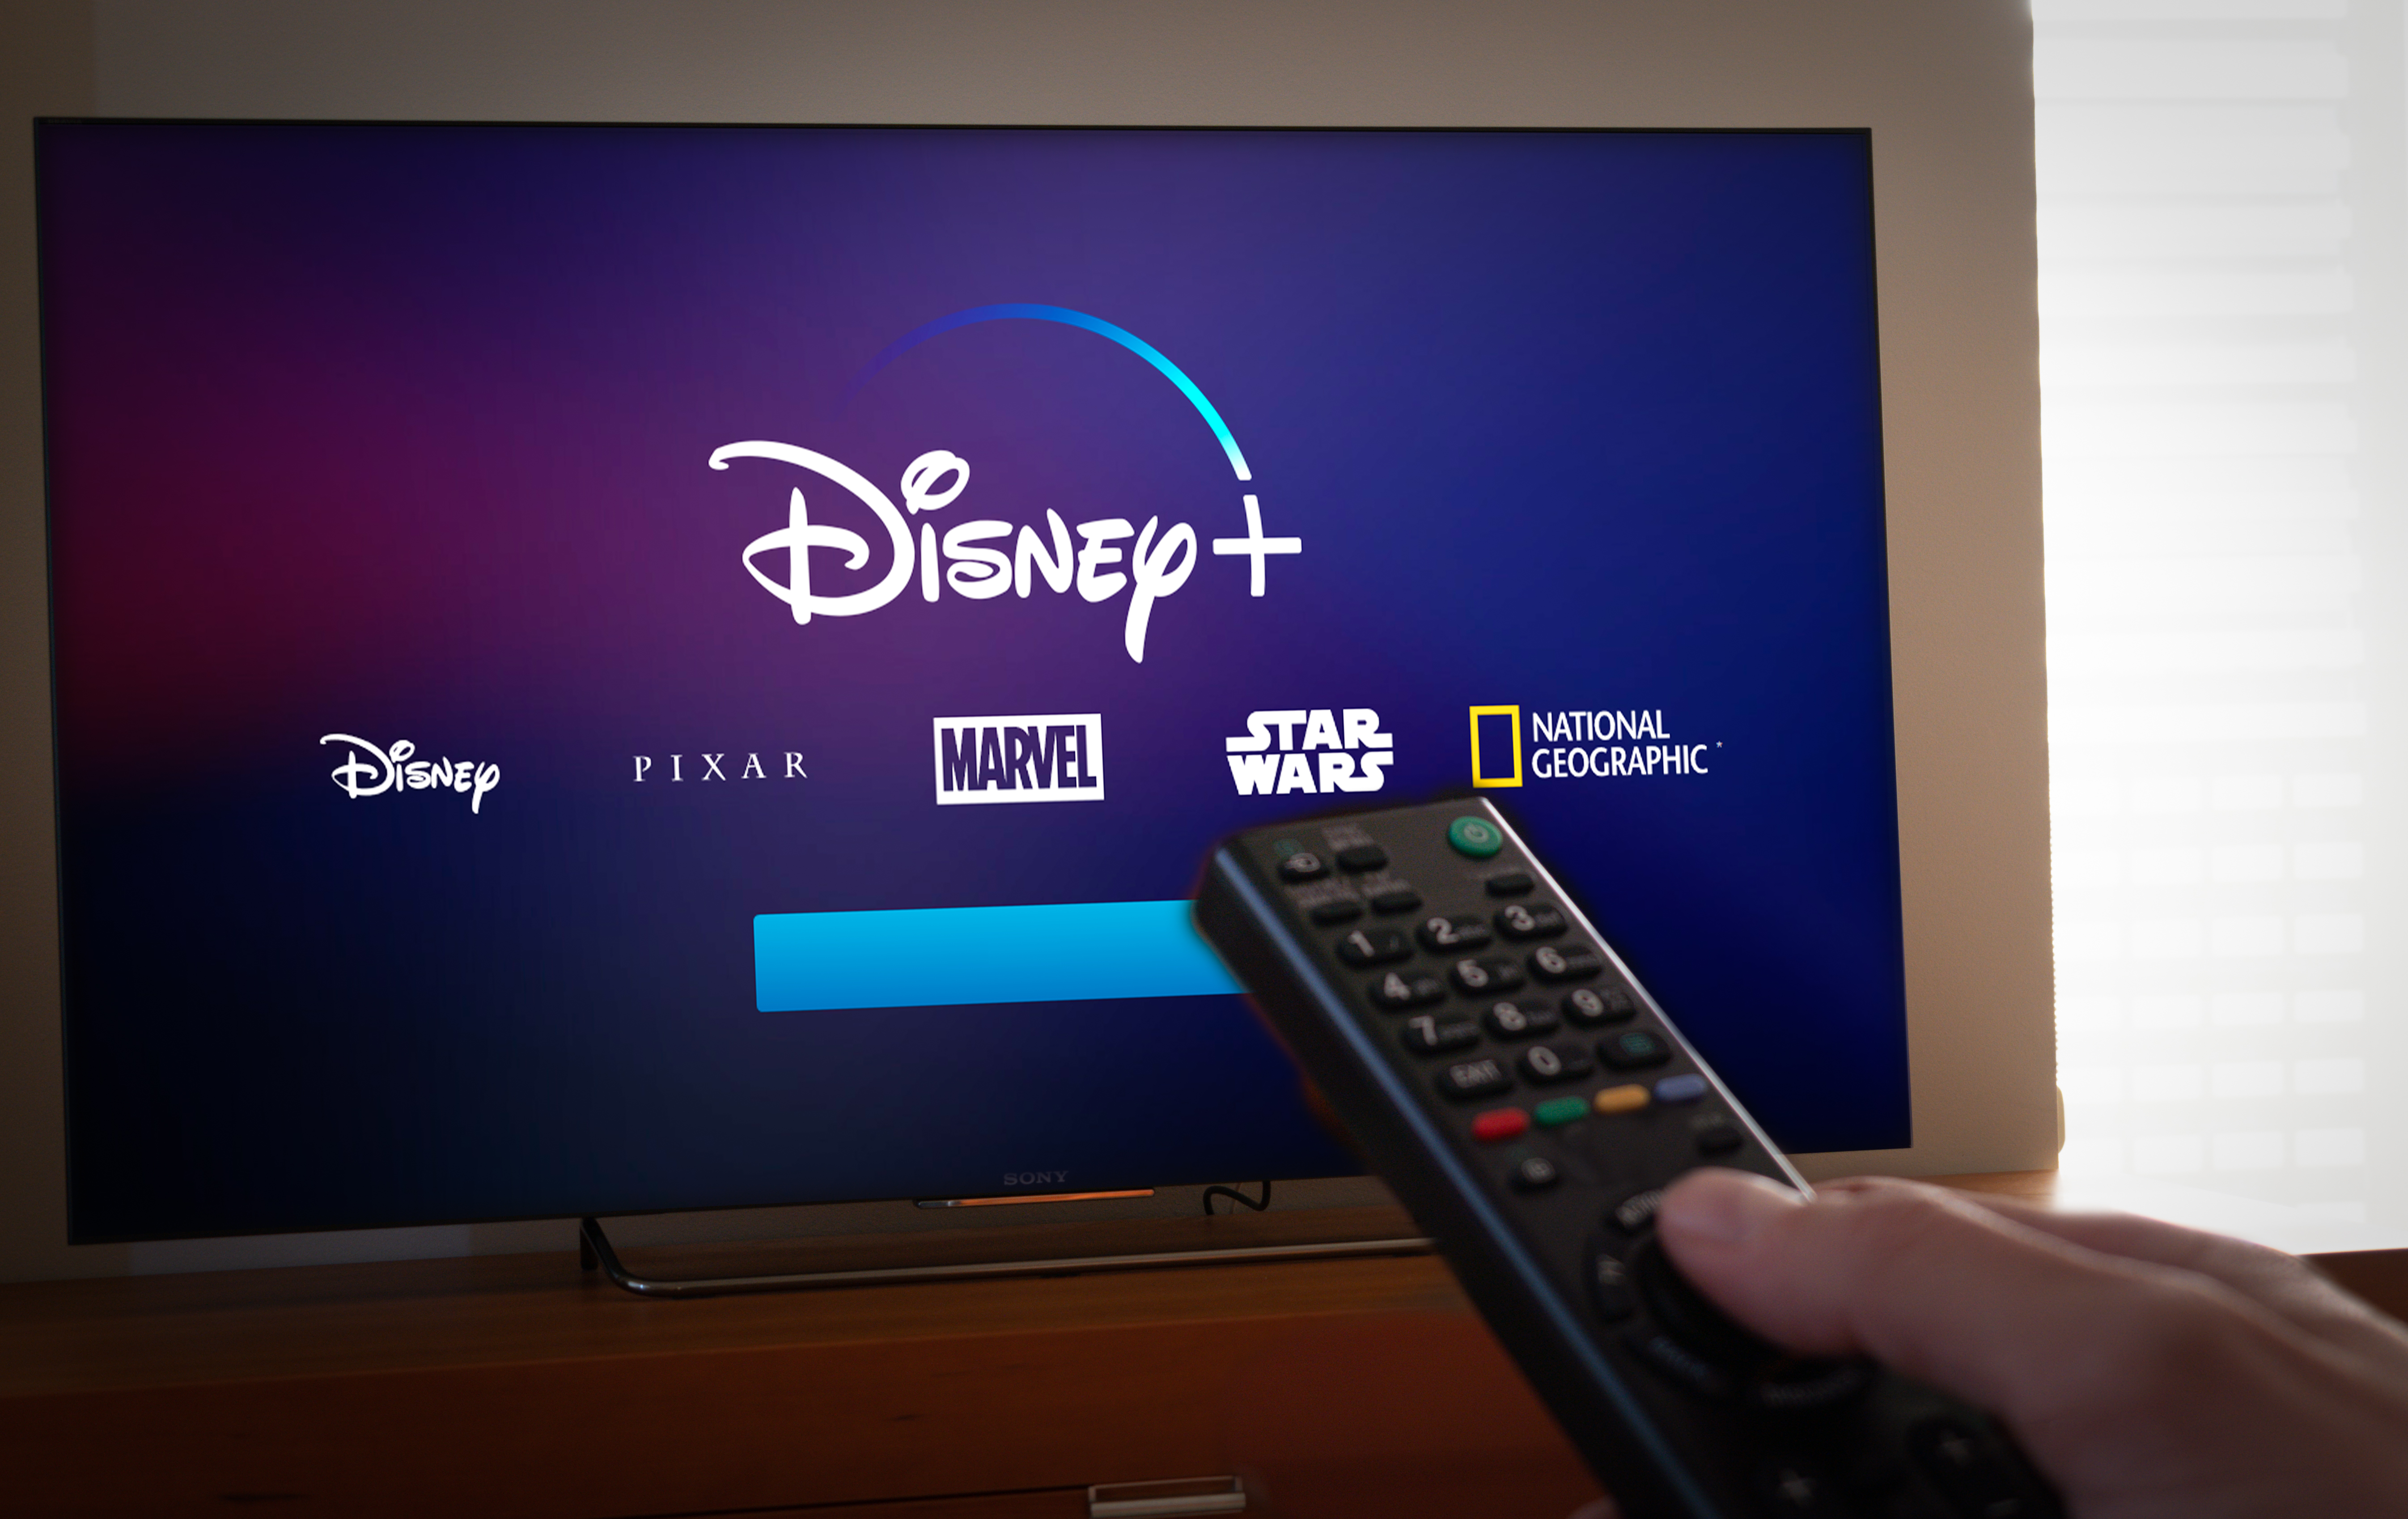 Con su plataforma que ofrece películas y series originales, Disney+ busca hacerle competencia a Netflix. (Shutterstock)